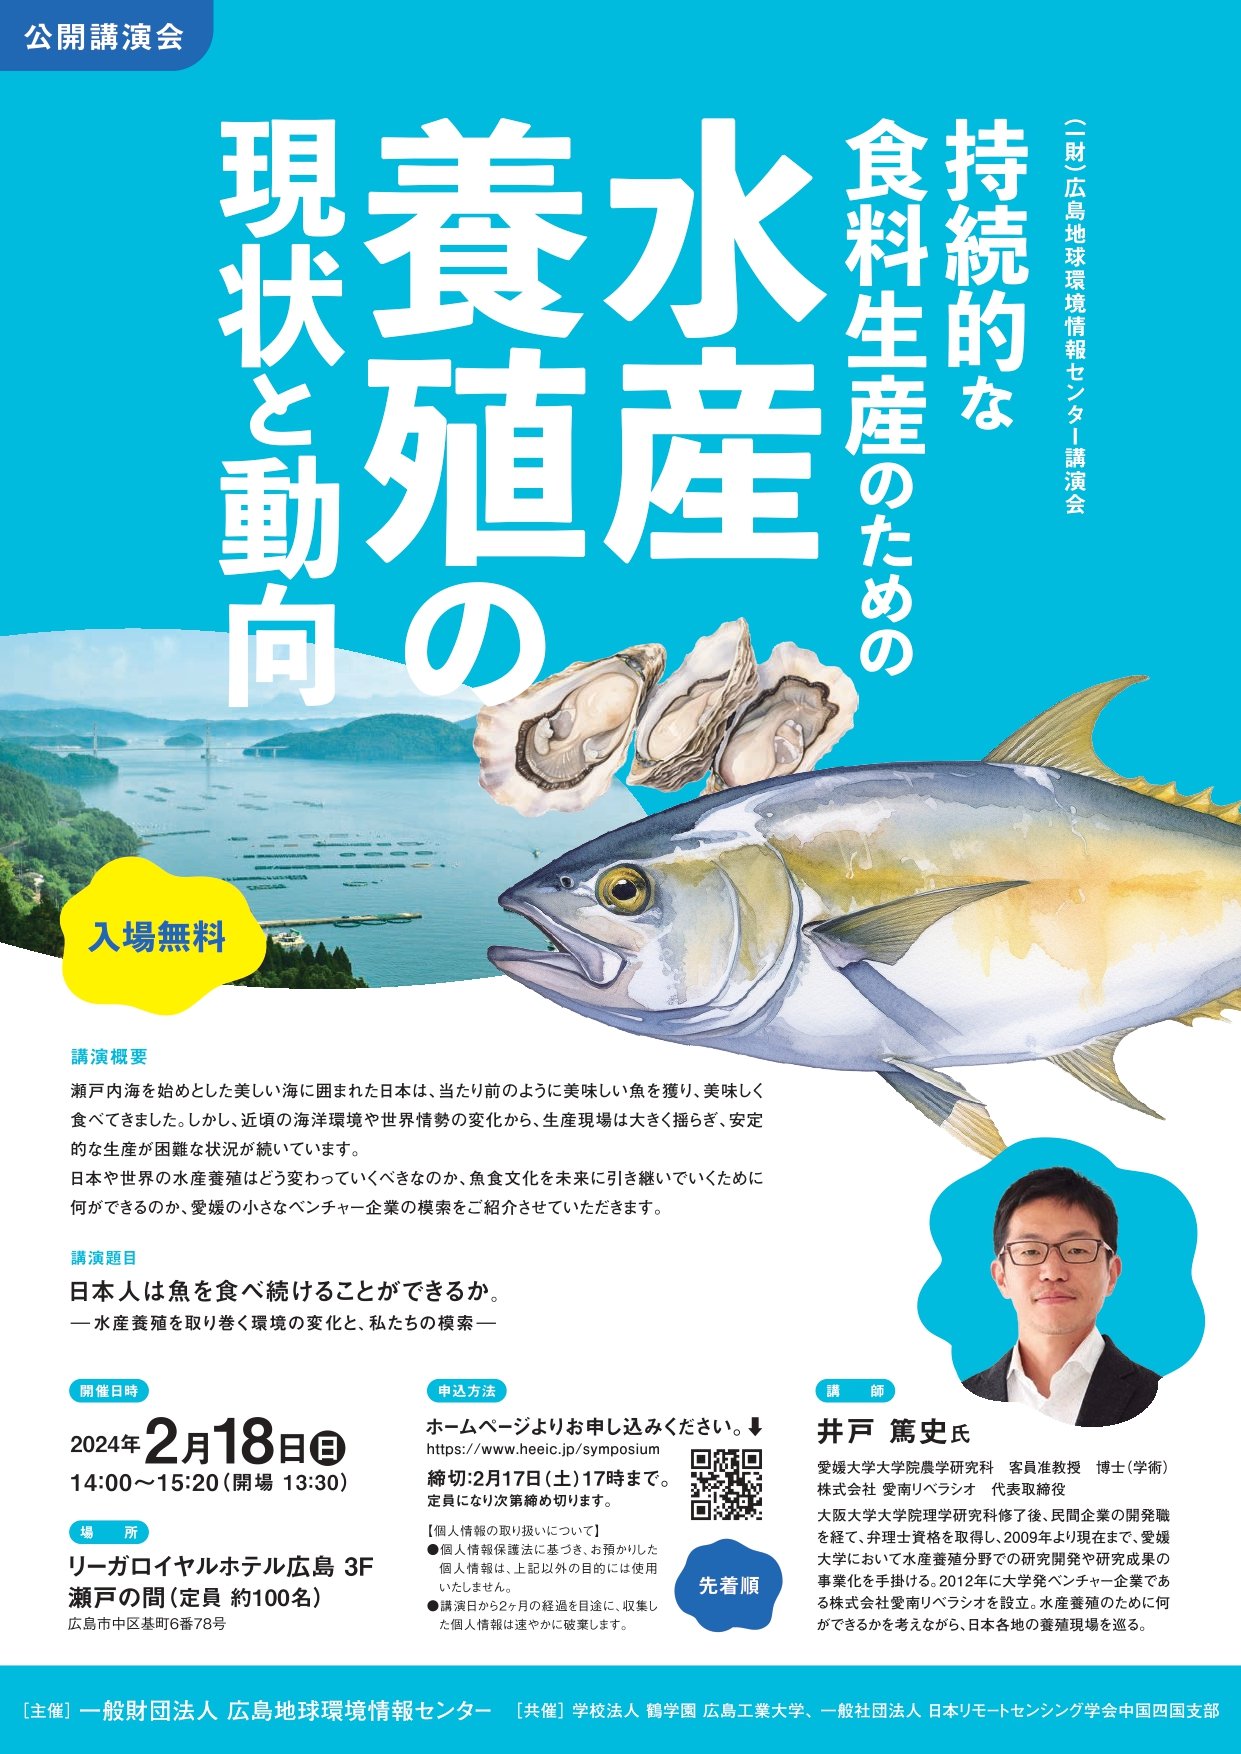 （一財）広島地球環境情報センター主催 講演会『持続的な食料生産のための水産養殖の現状と動向』を実施します